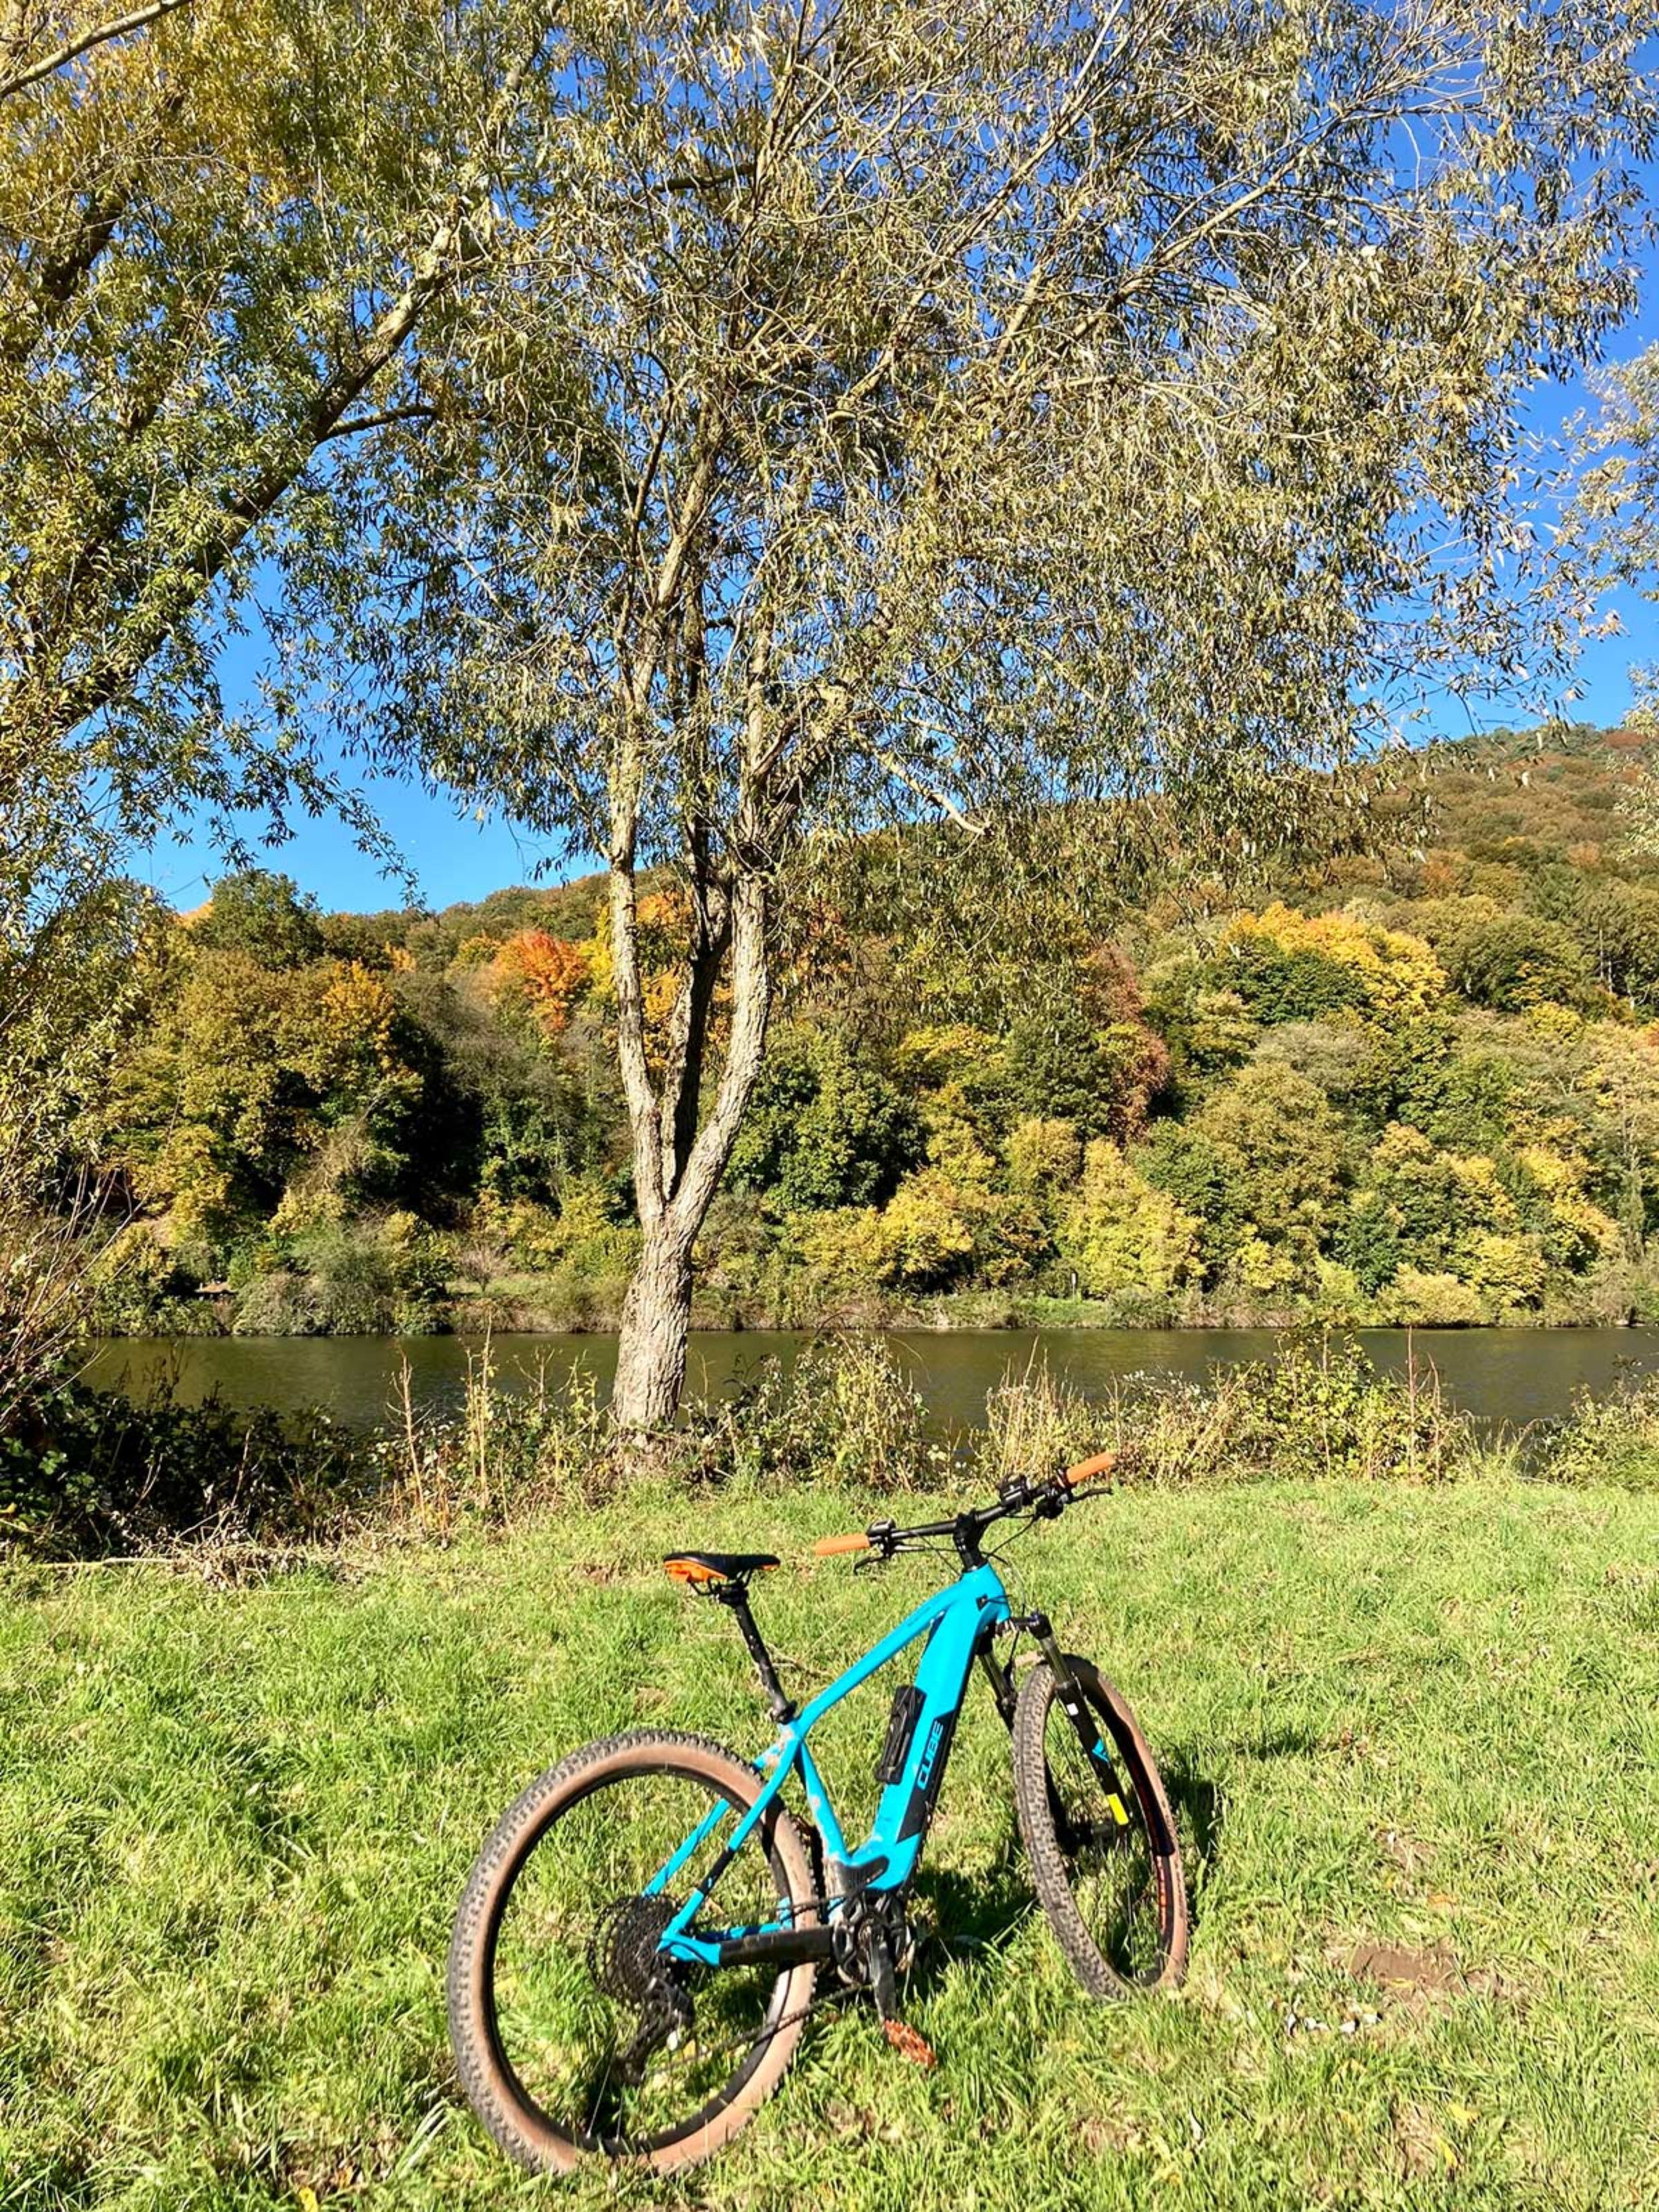 Wochenende am Neckar im Herbst.